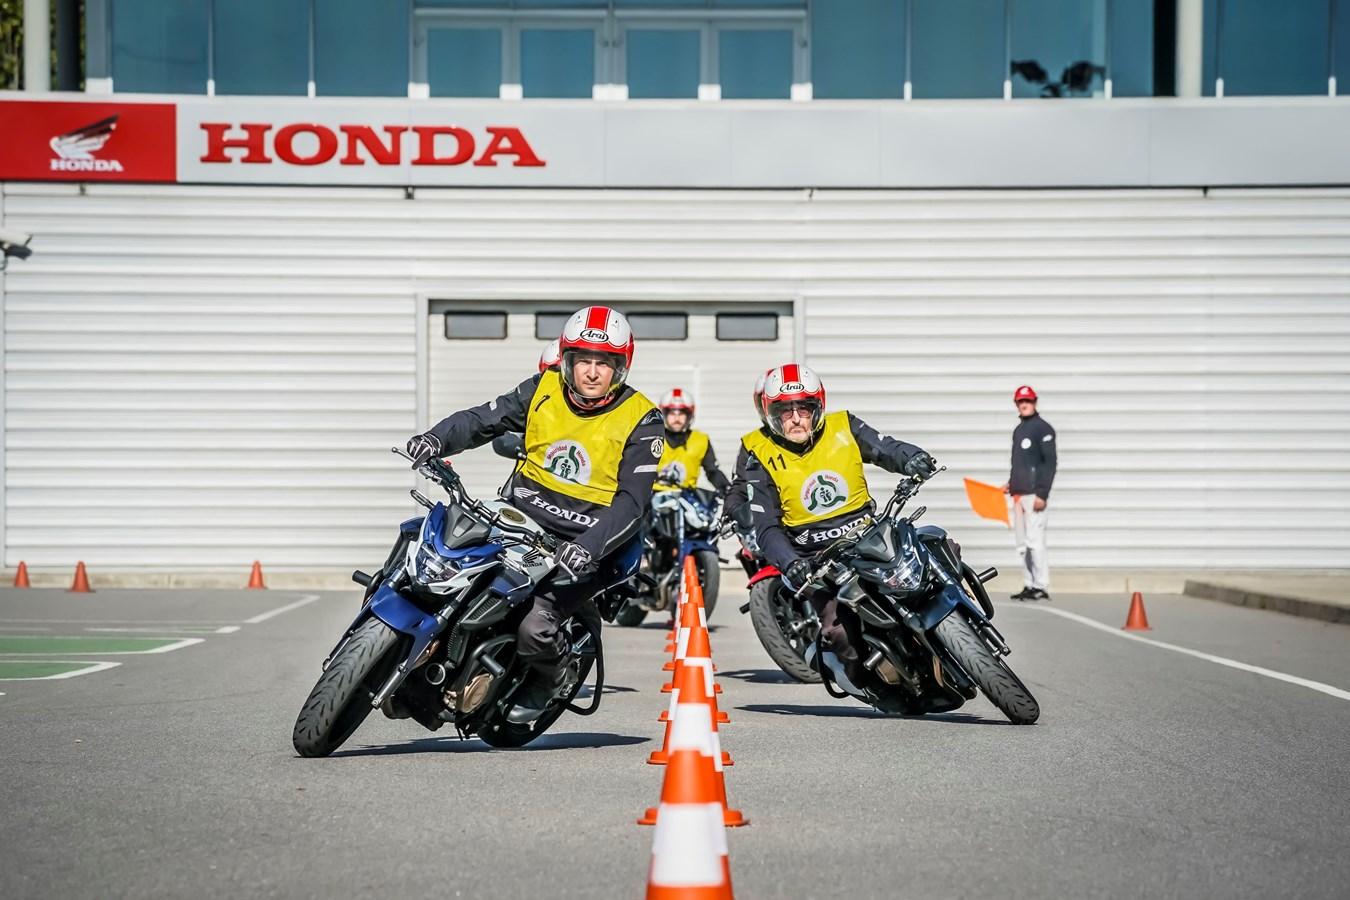 El Honda Instituto de Seguridad reinicia sus cursos de formación